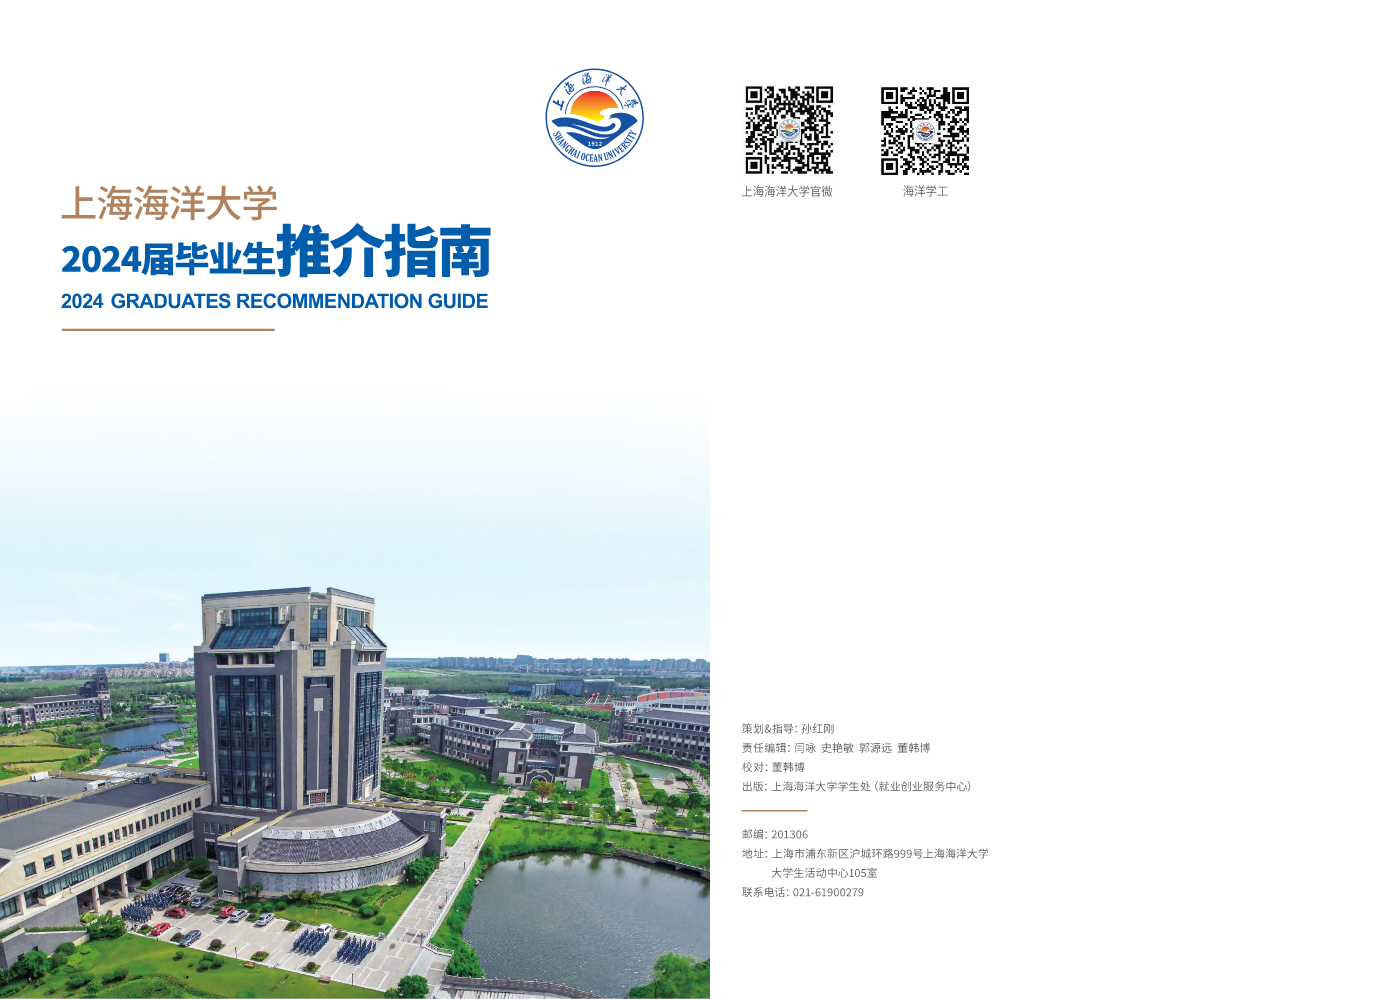 上海海洋大学2024届毕业生推介指南